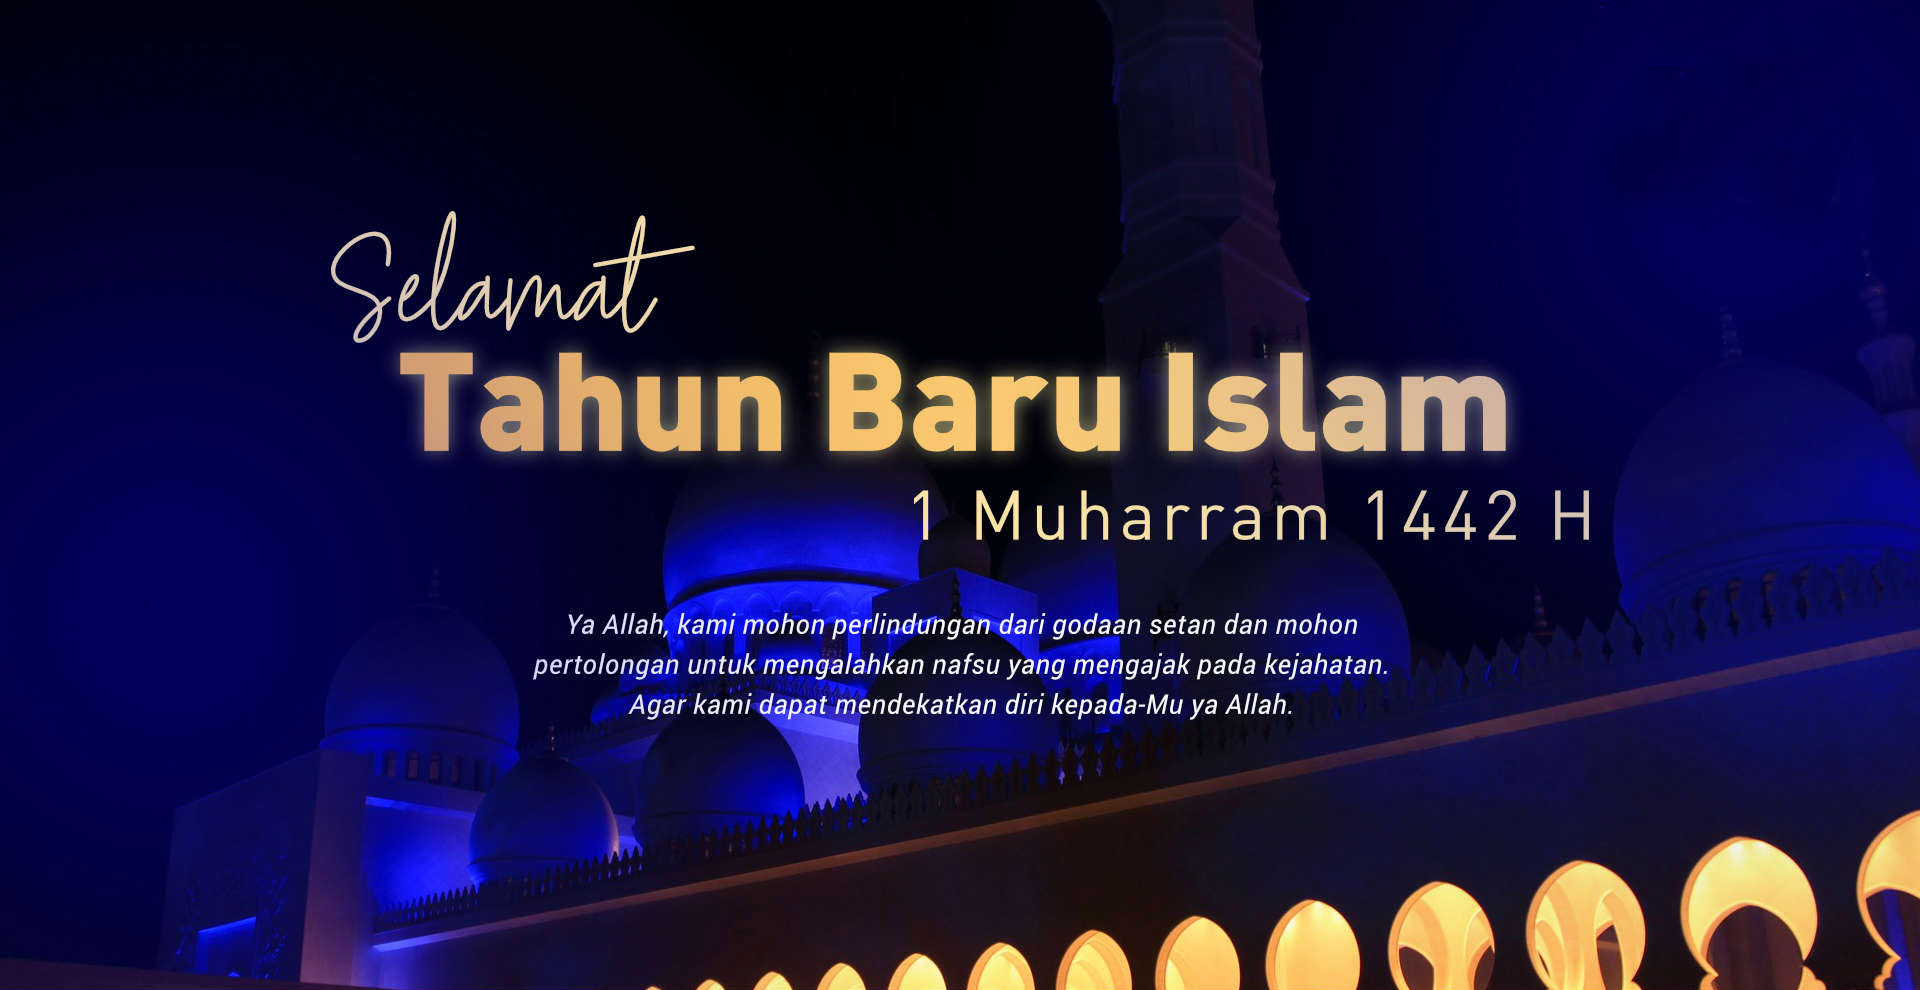 Selamat Tahun Baru Islam – 1 Muharram 1442 H